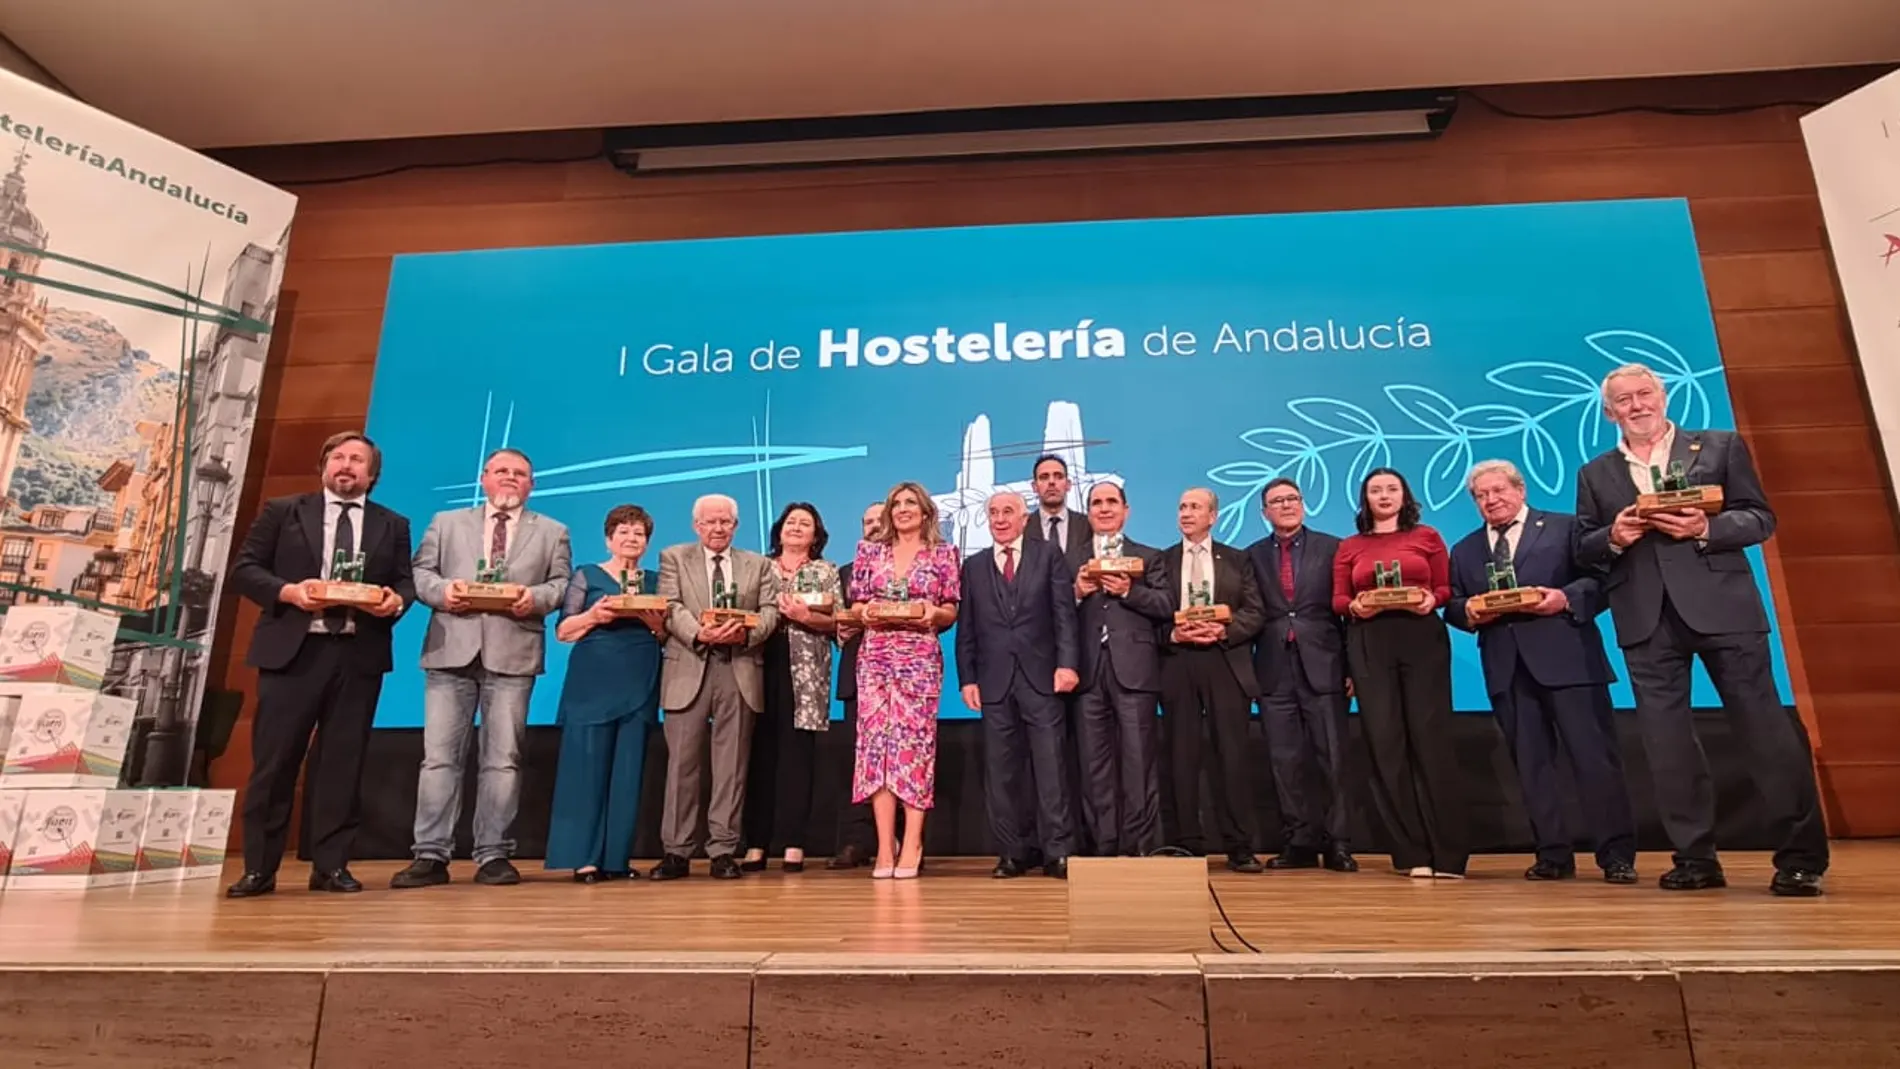 I Gala de Hostelería de Andalucía